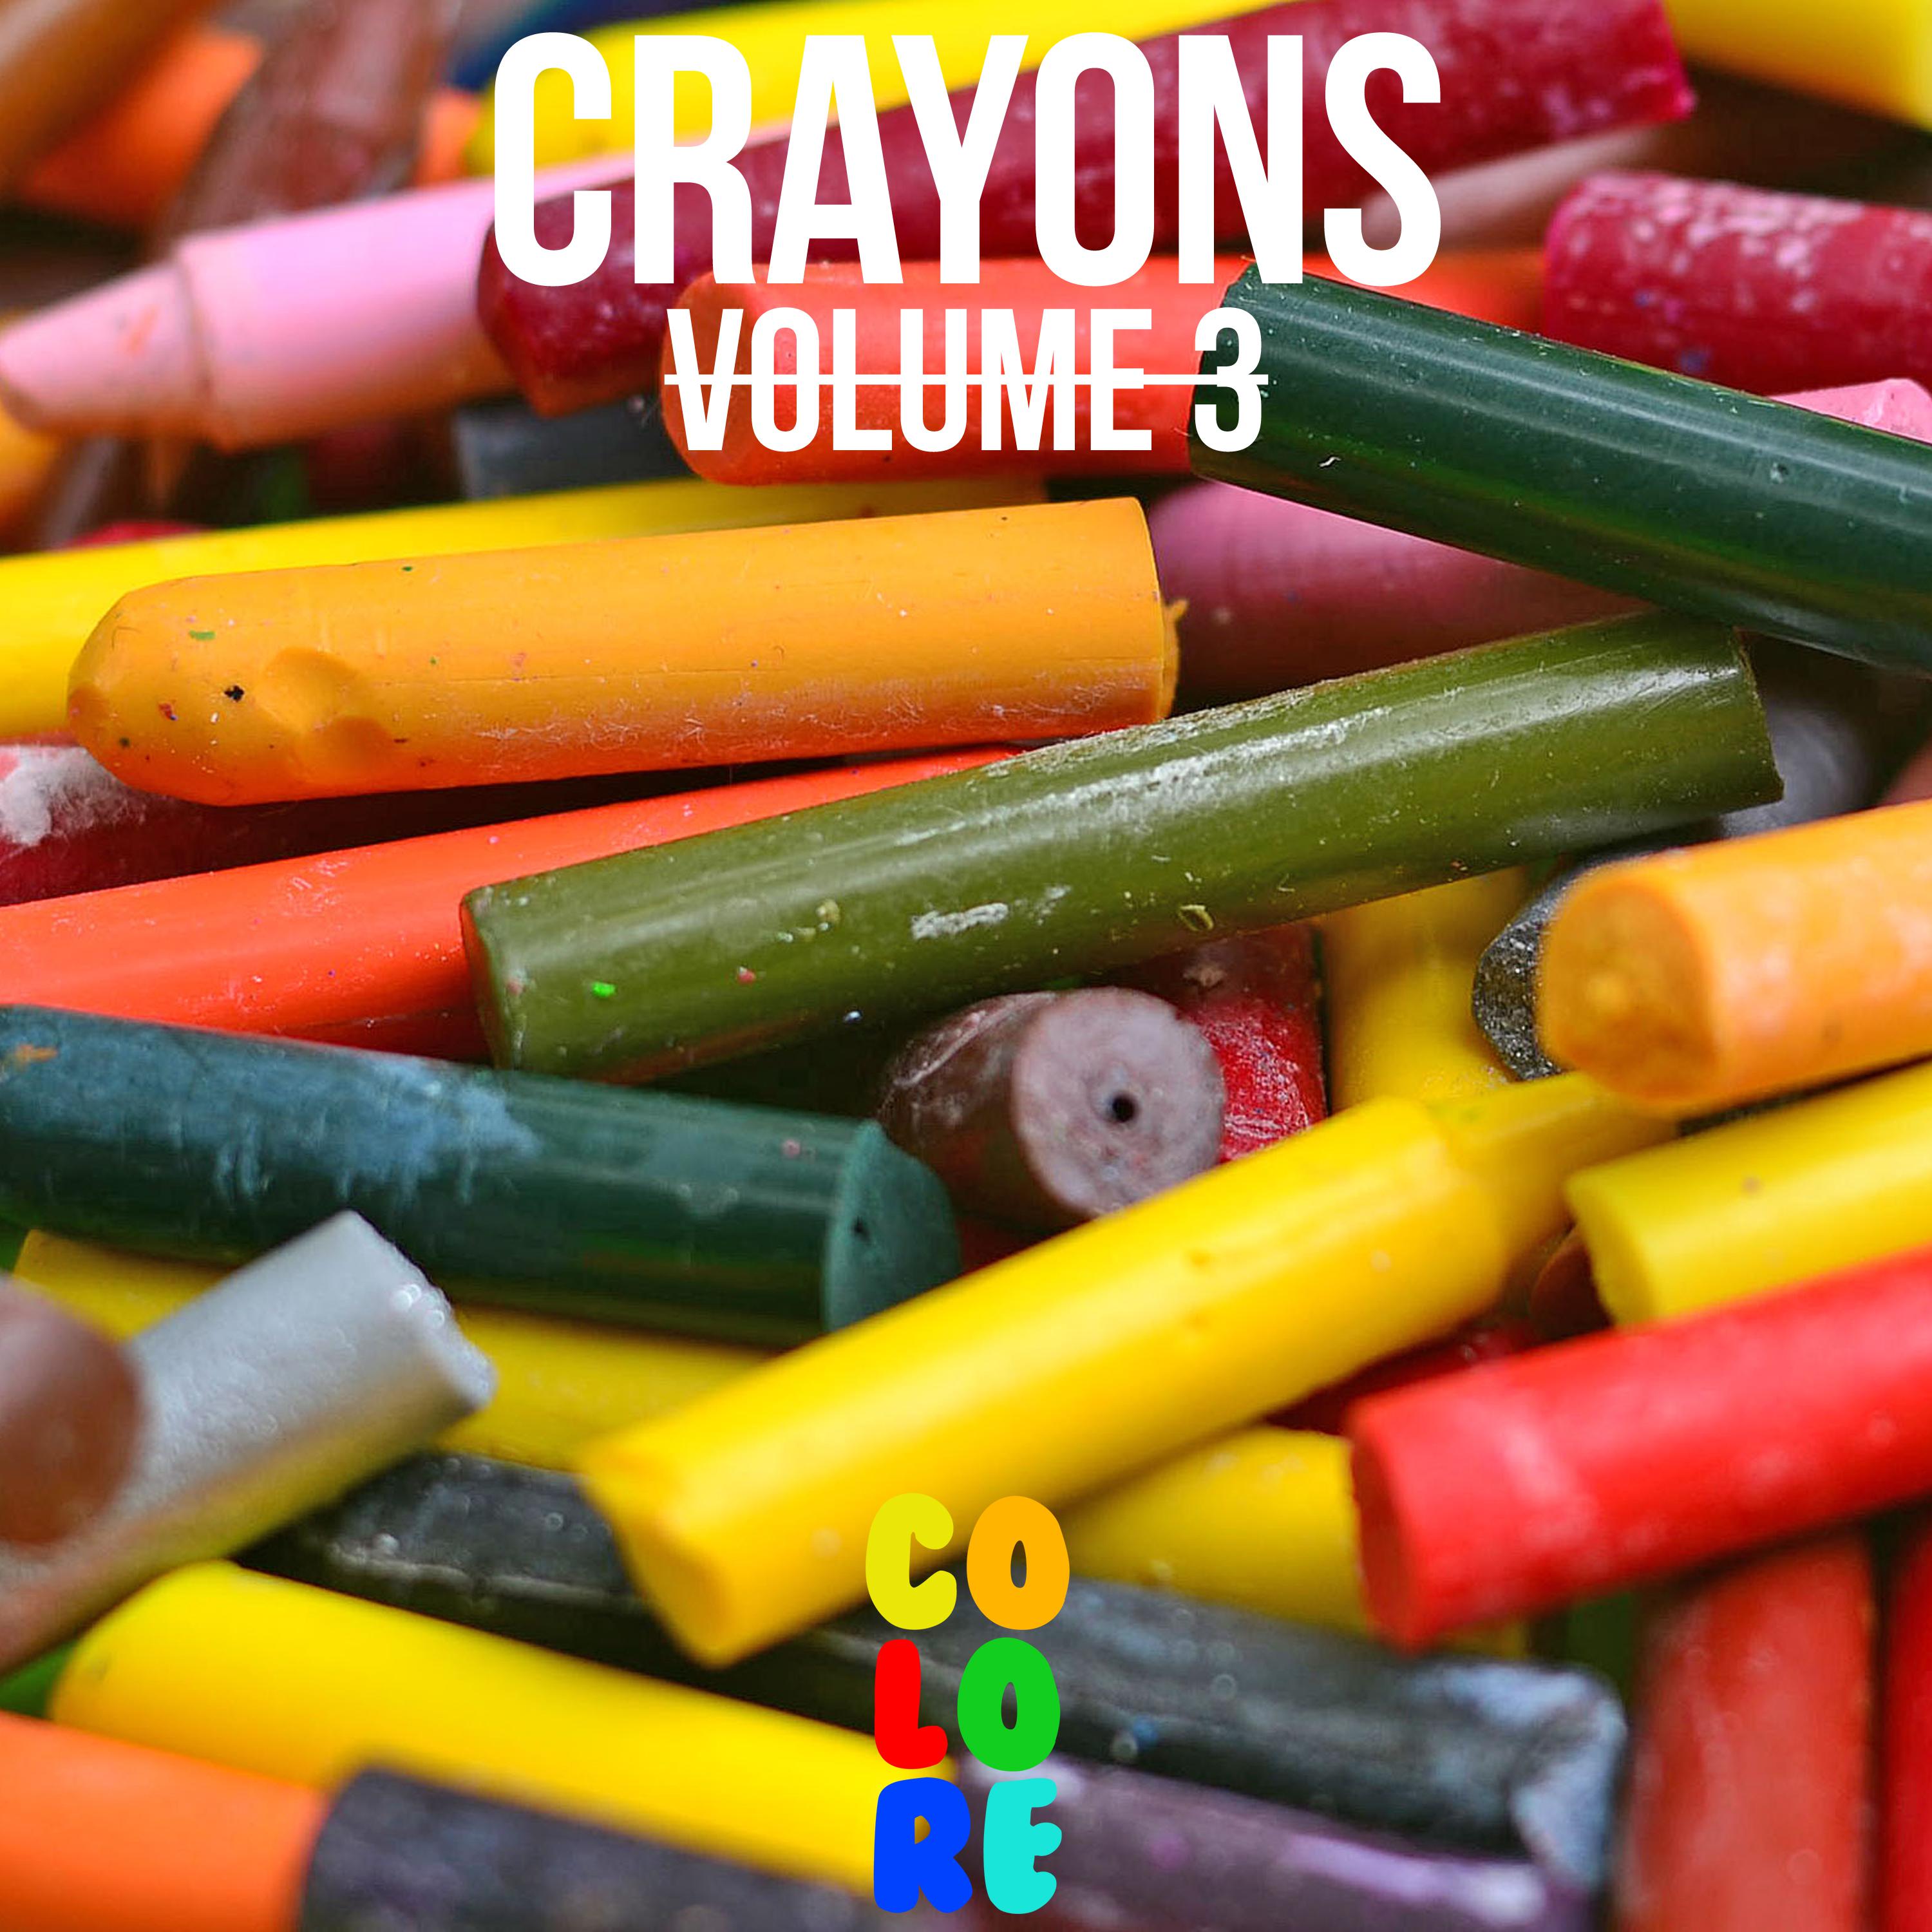 Crayons, Vol. 3